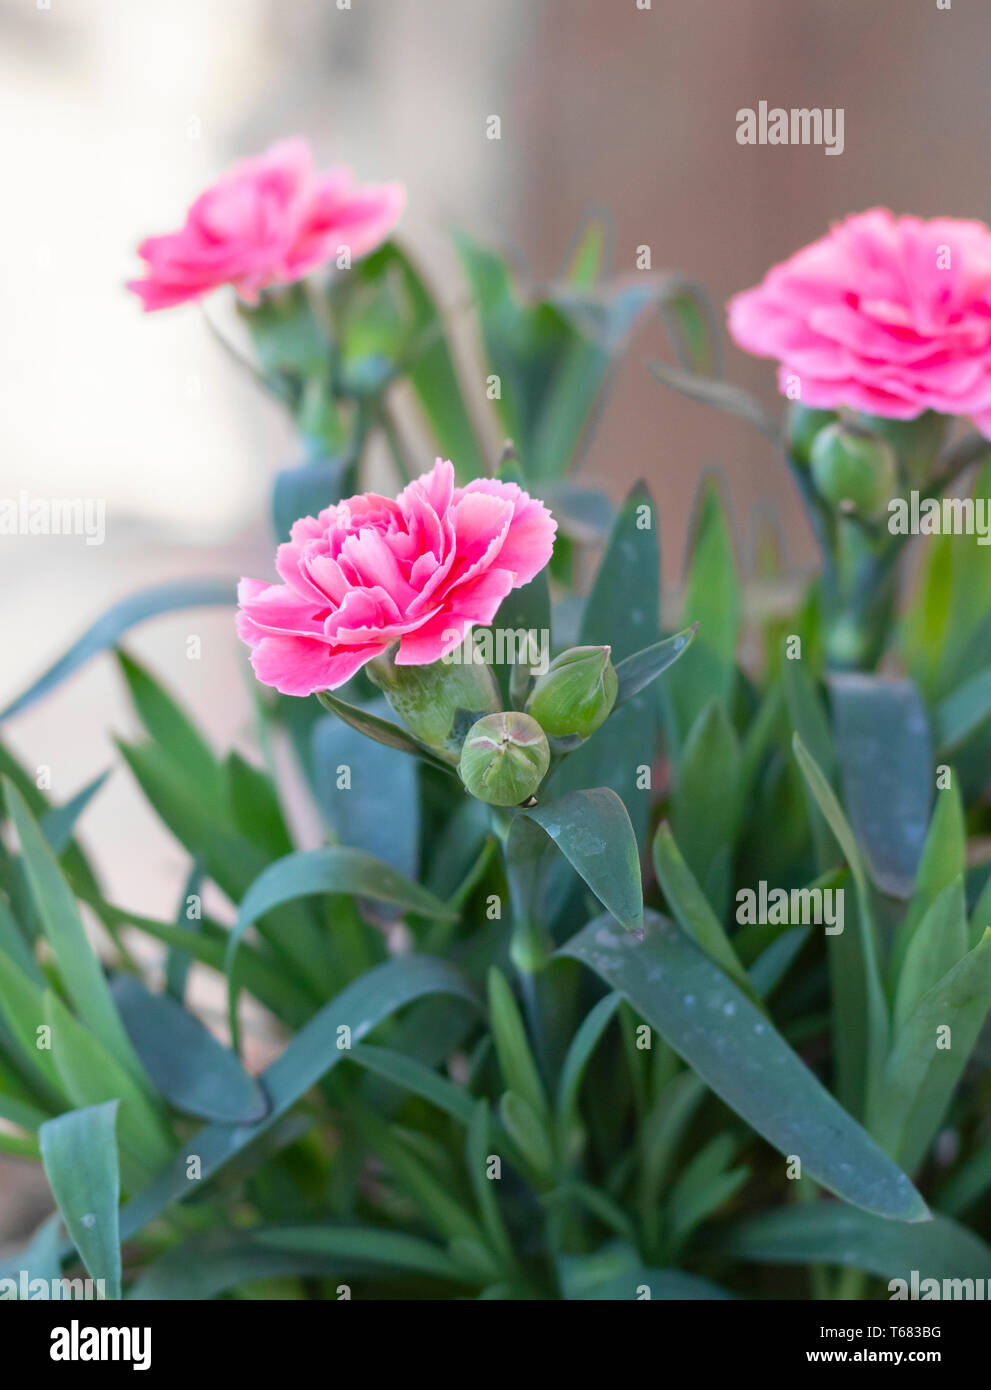 Rosa fiore di chiodi di garofano Foto Stock